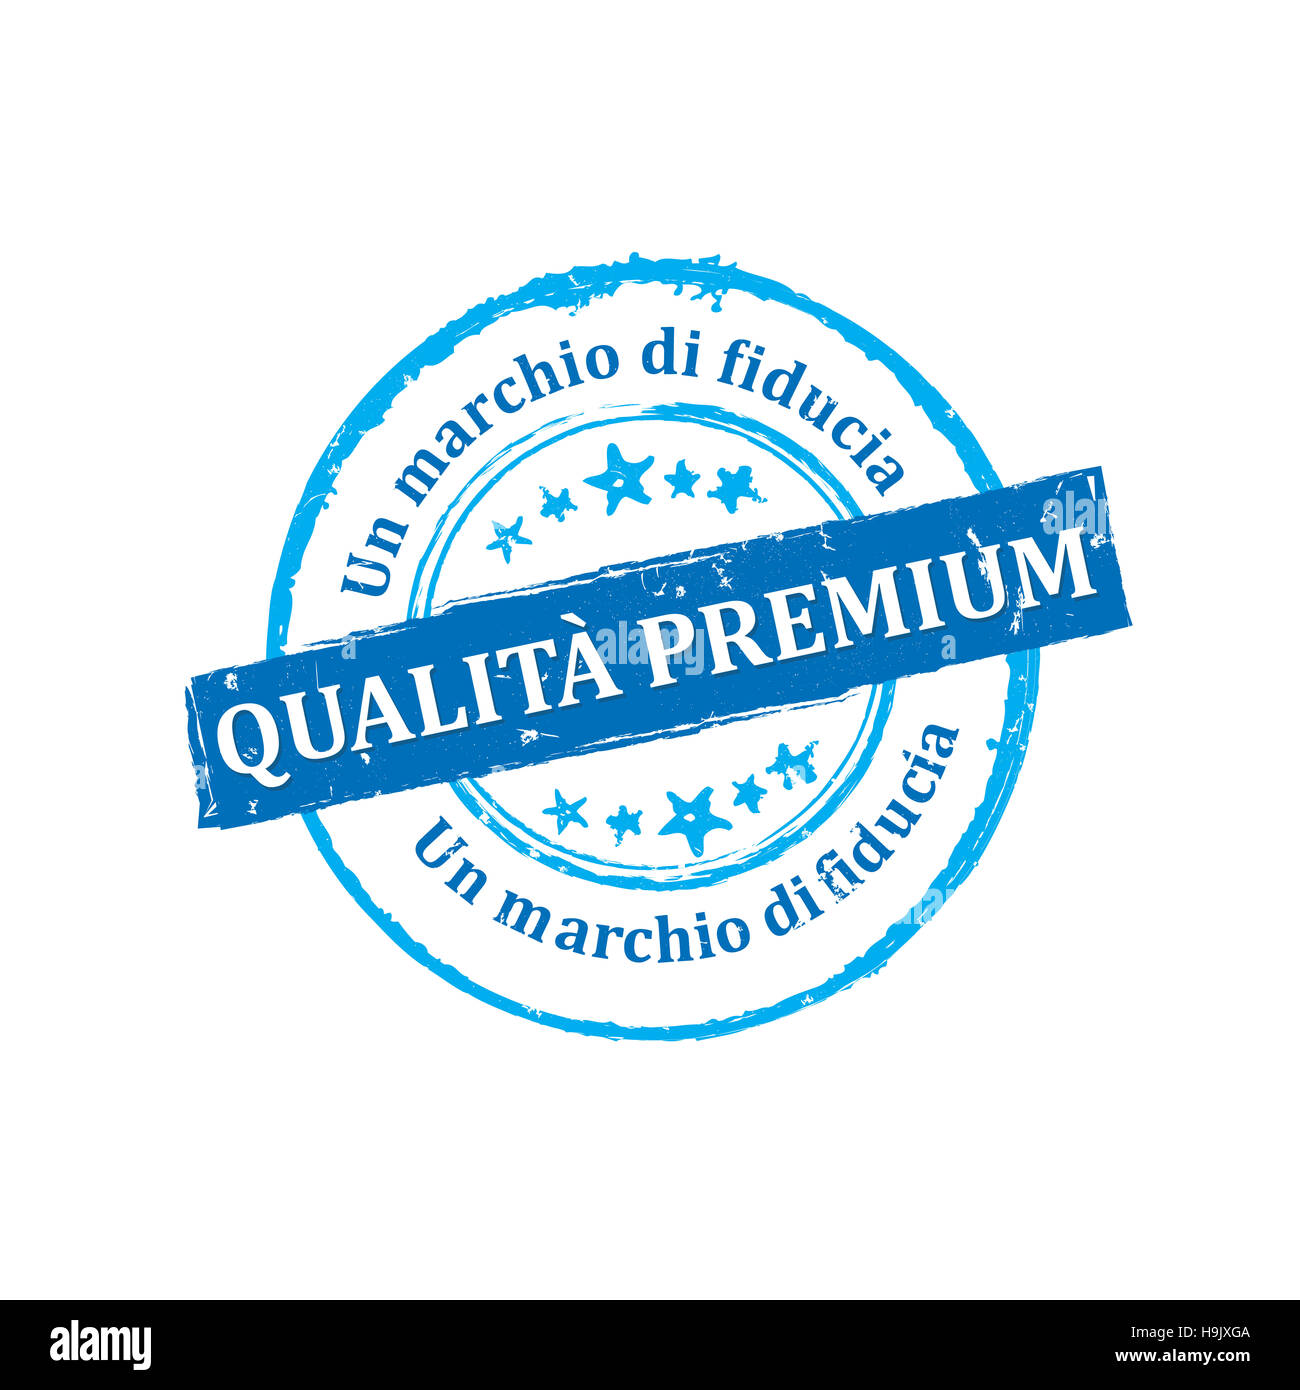 Qualità Premium, Un marchio di fiducia etichetta / Medaglia Stock Photo